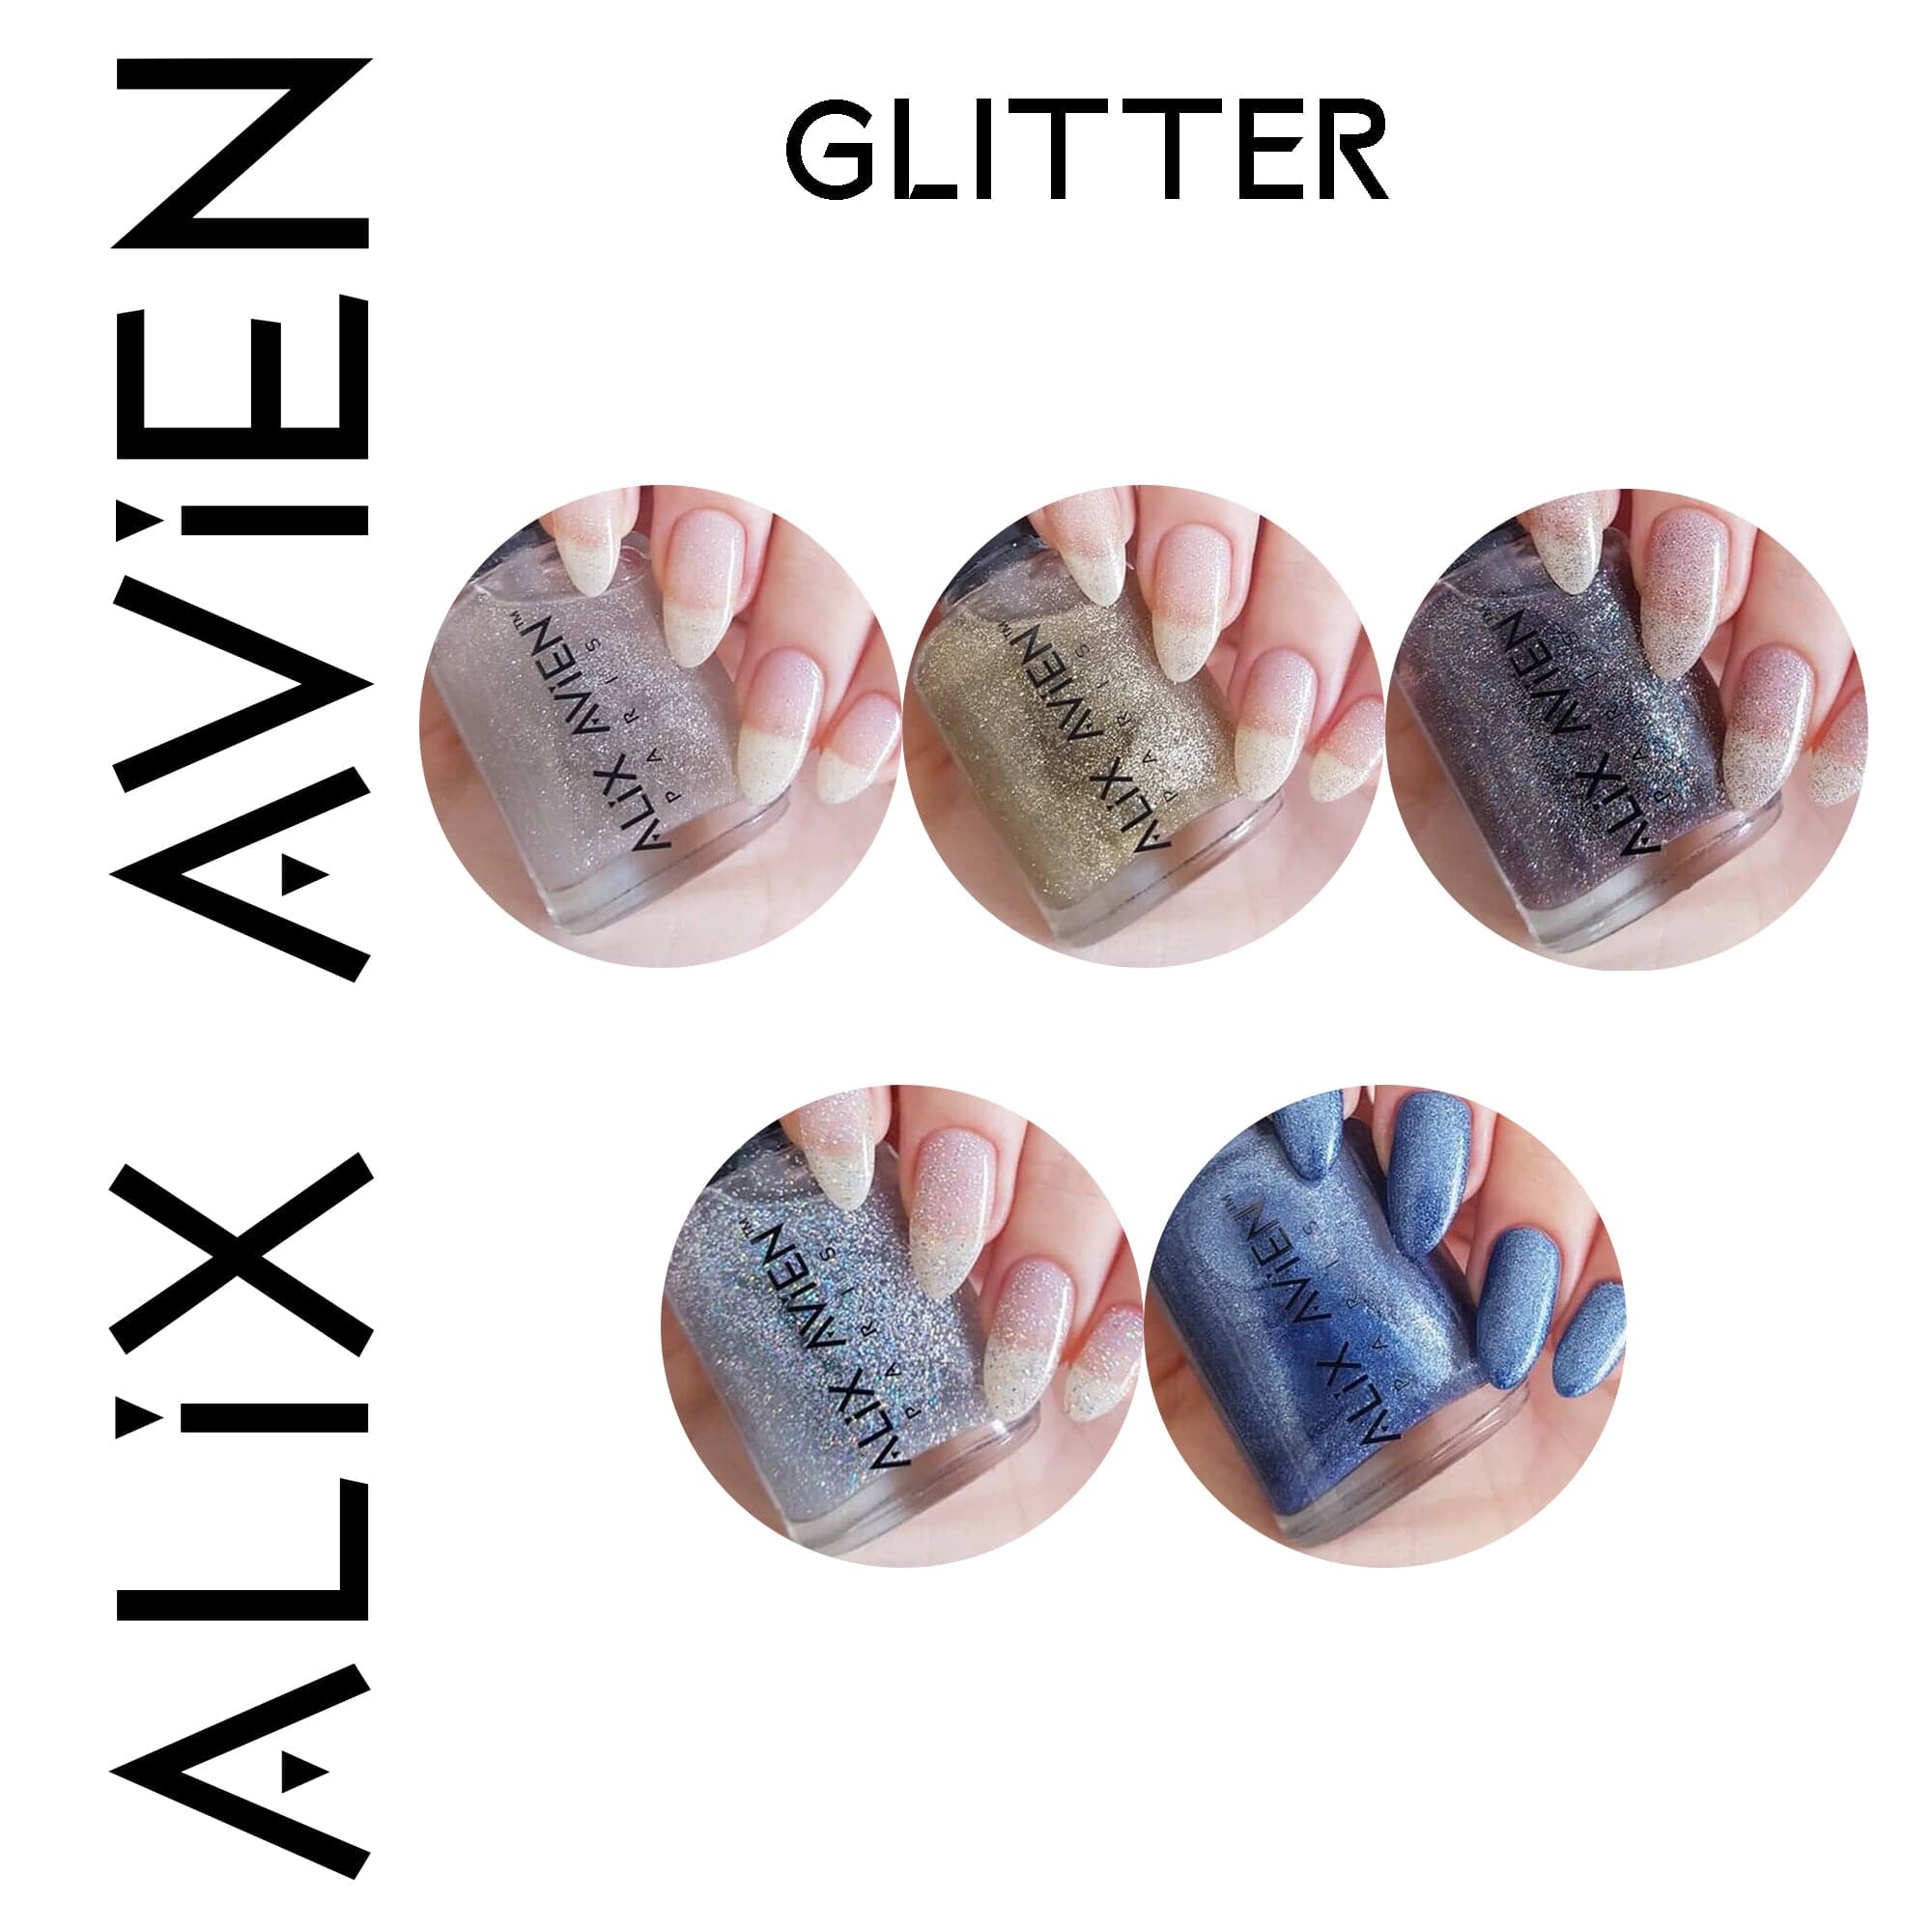 Alix Avien - Nail Polish No.40 (Denim Blue Glitter) - Eson Direct